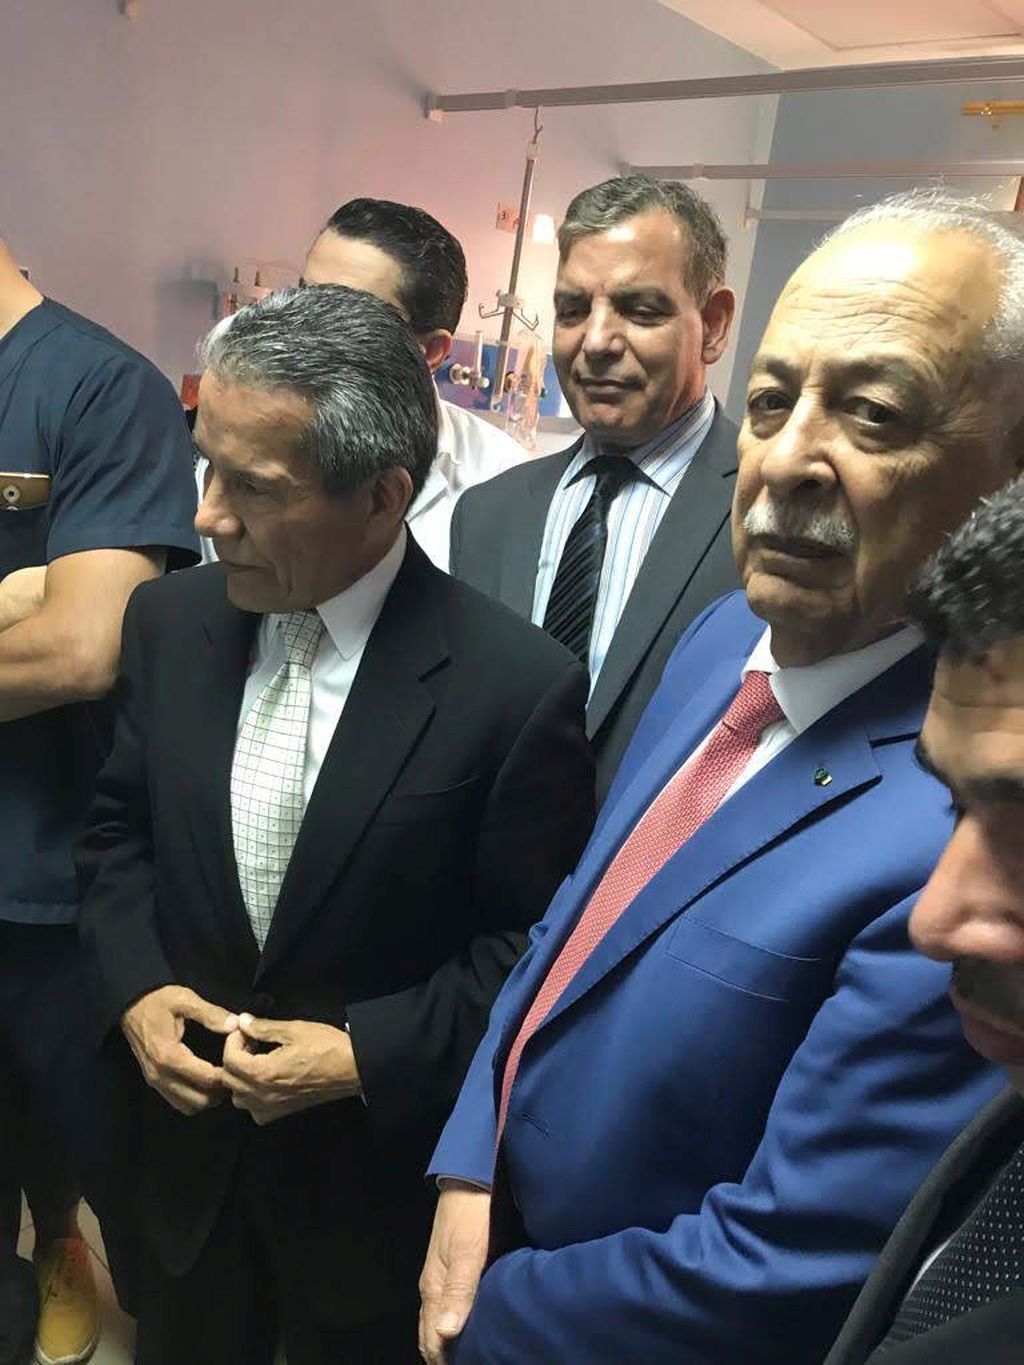 En el hospital, el Embajador mexicano Roberto Rodríguez,el jefe de la Corte Real, Yousef Isawi (de azul) y en el medio, atrás, el Ministro de Salud Pública jordano Dr. Sa´ed Jaber